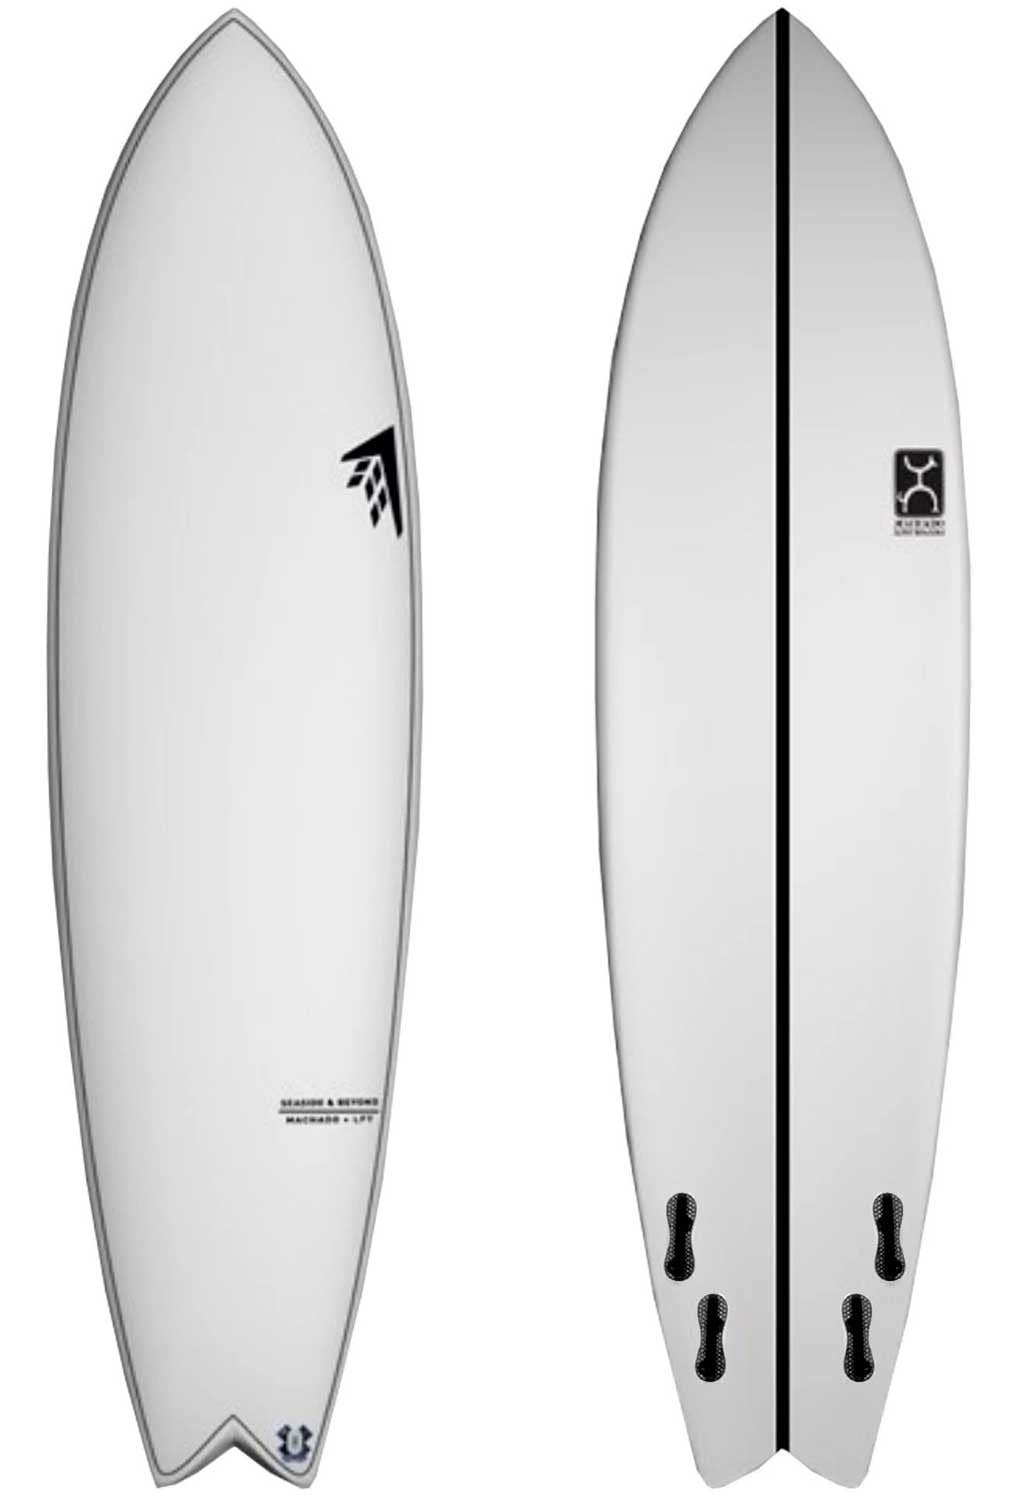 Planche de surf Firewire – Seaside & Beyond 6'8 LFT - 40.9L